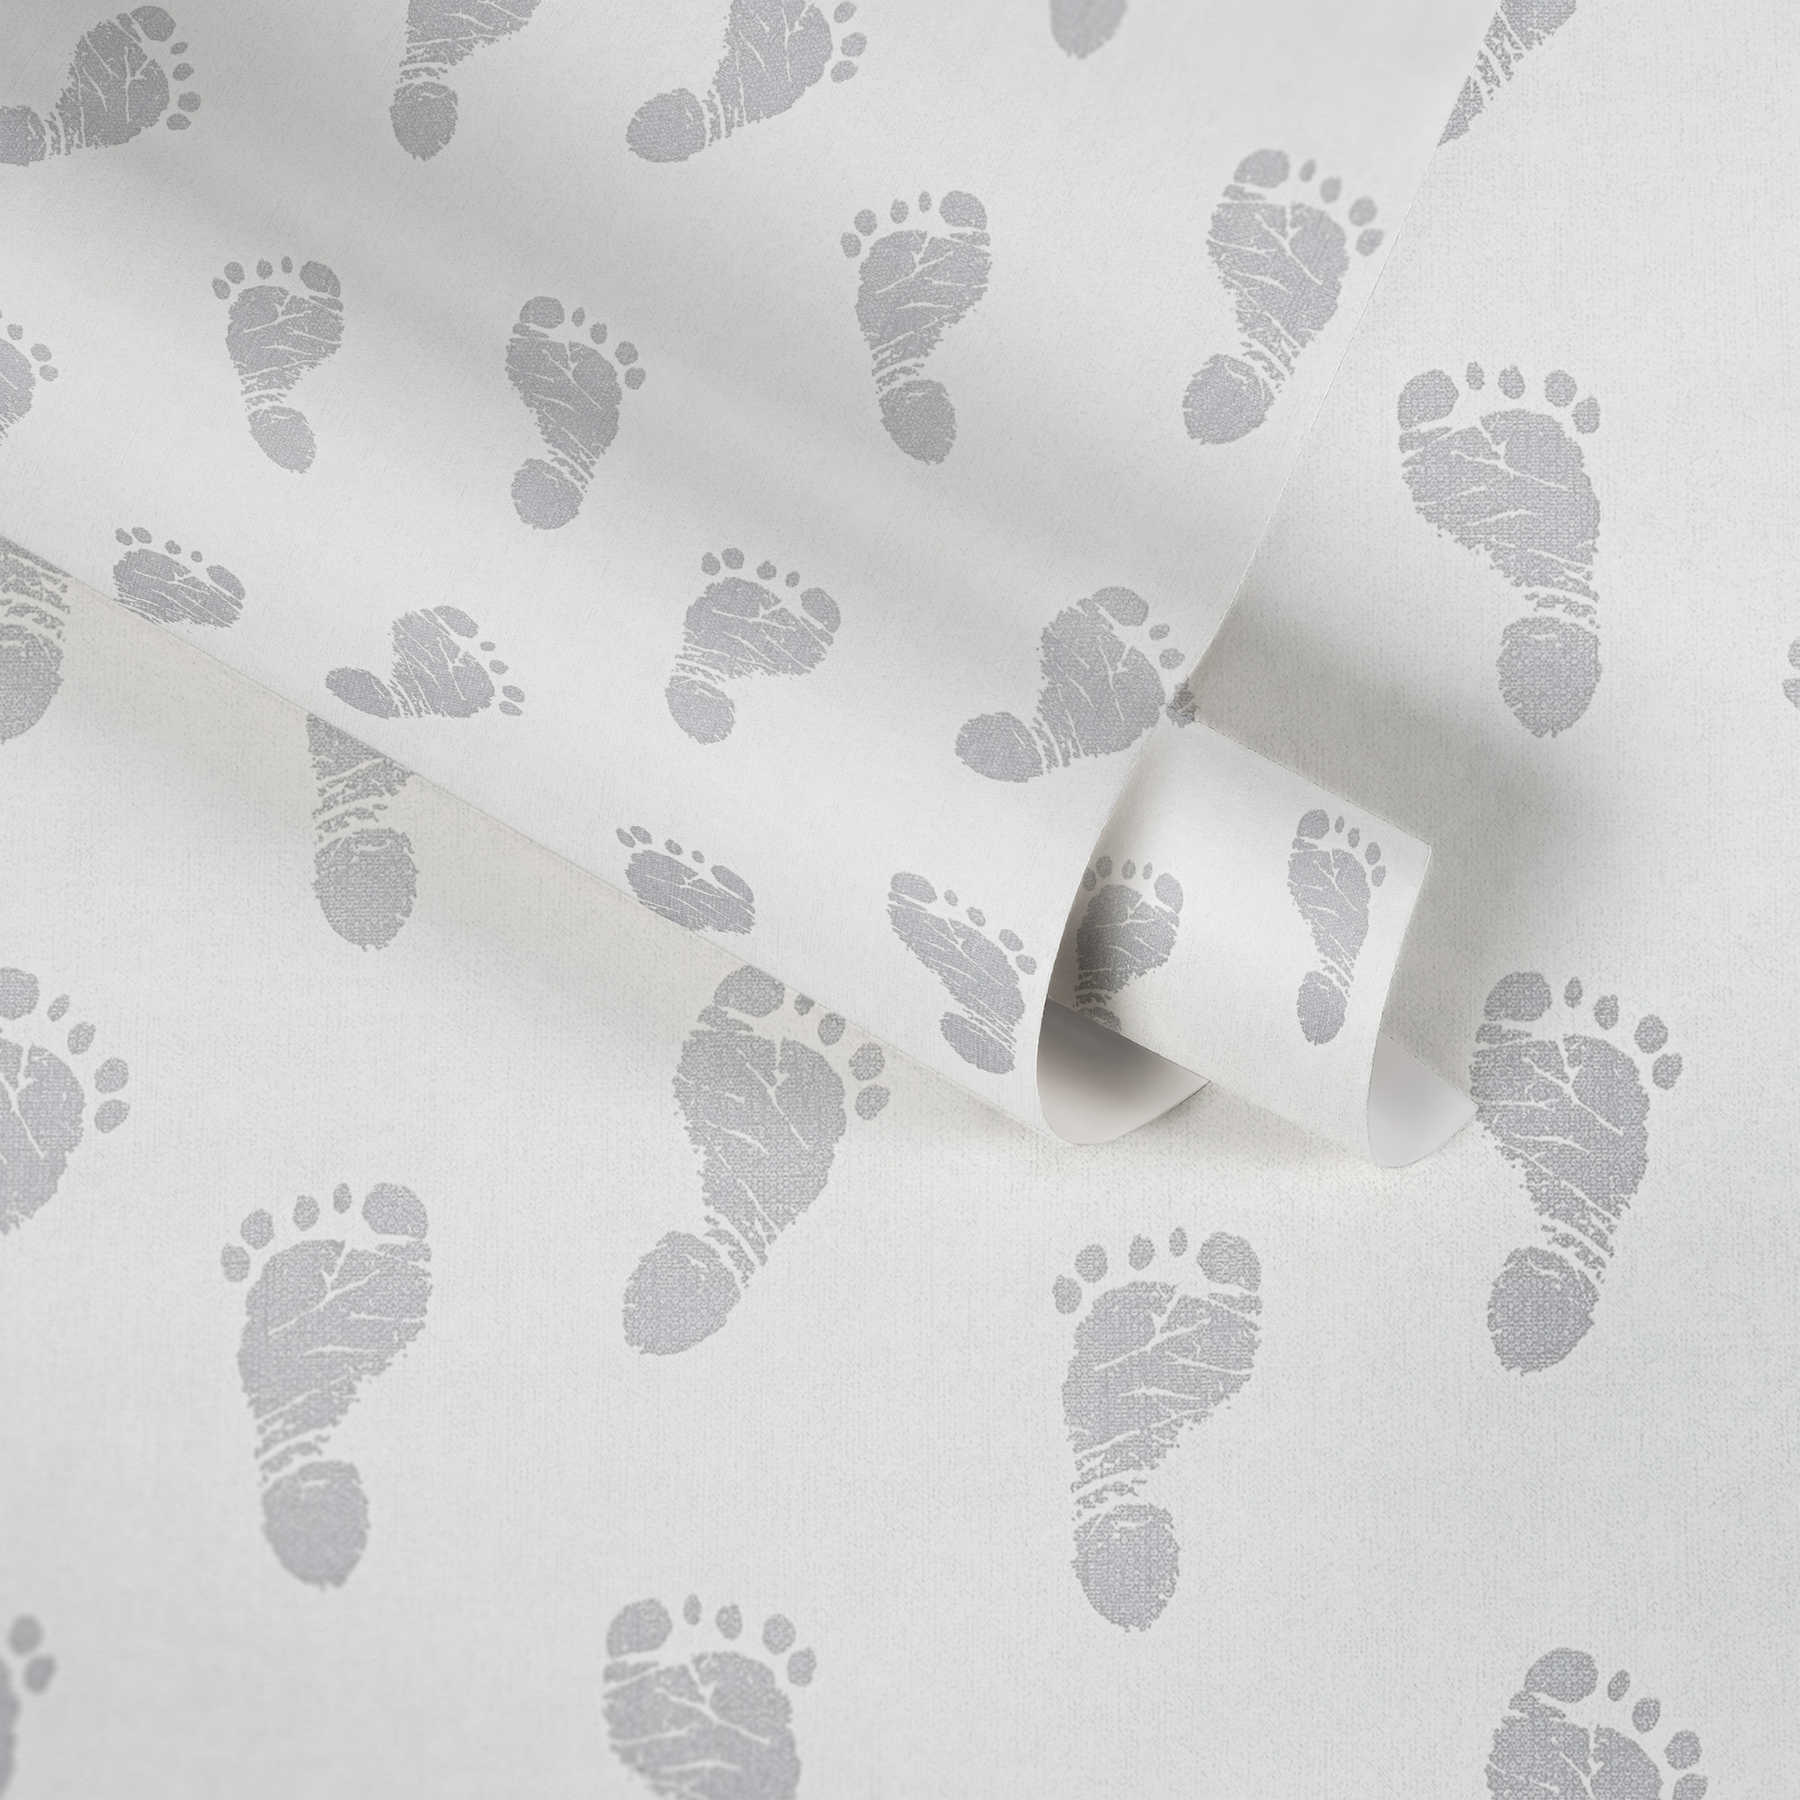             Papier peint bébé avec motif de pieds - métallique, blanc
        